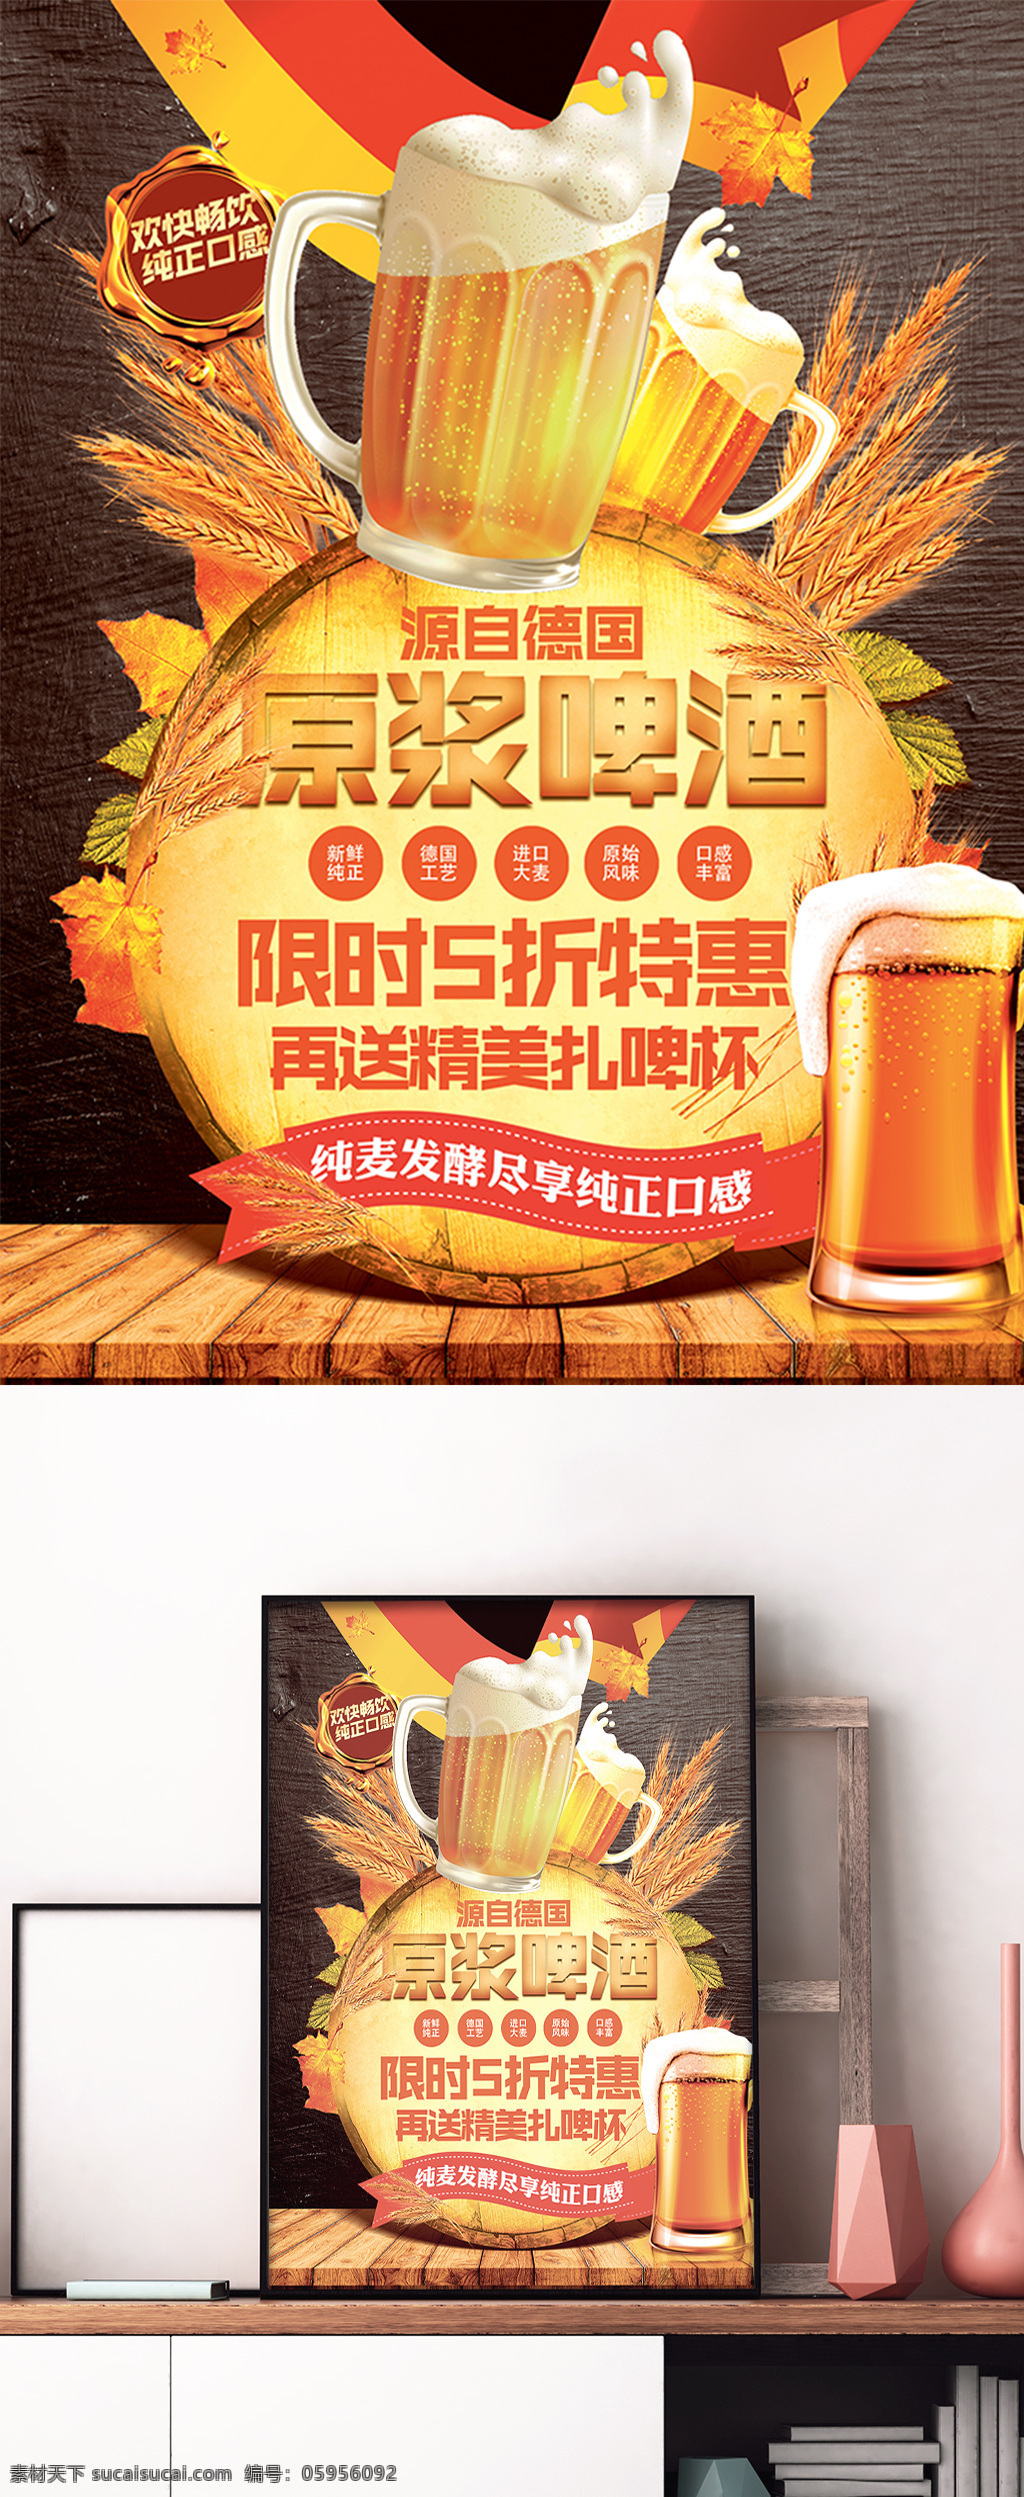 德国 原浆 啤酒 清新 宣传 促销 海报 扎啤 饮品 粮食 酿酒 展板